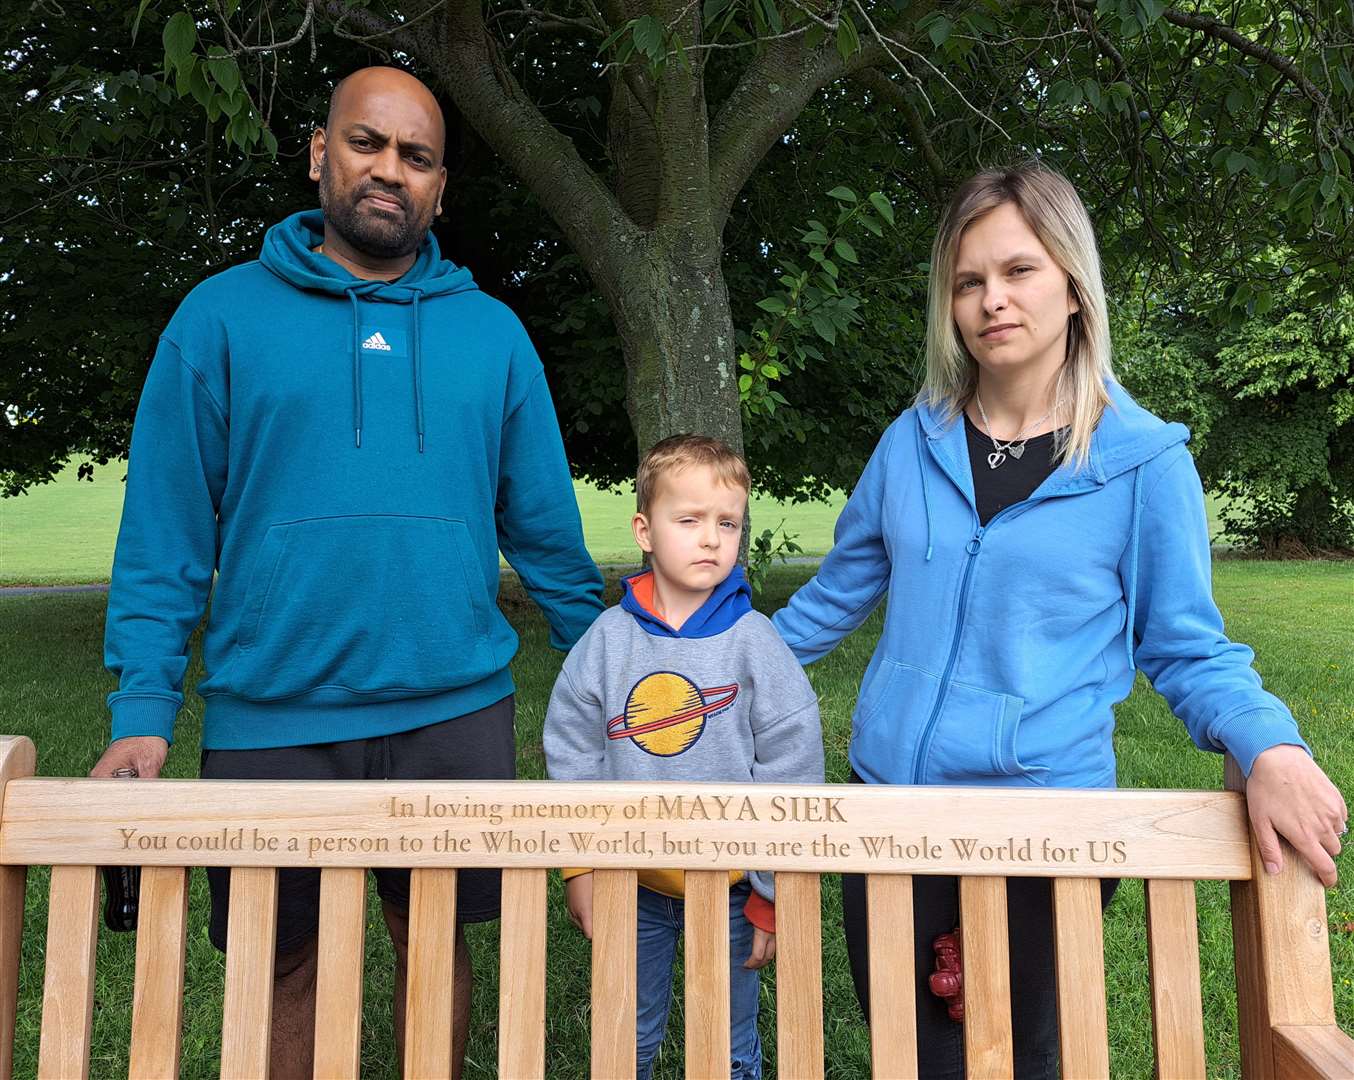 Rajratan Bande, Magdalena Wisniewska and their son Nathan, with the bench dedicated to Maya